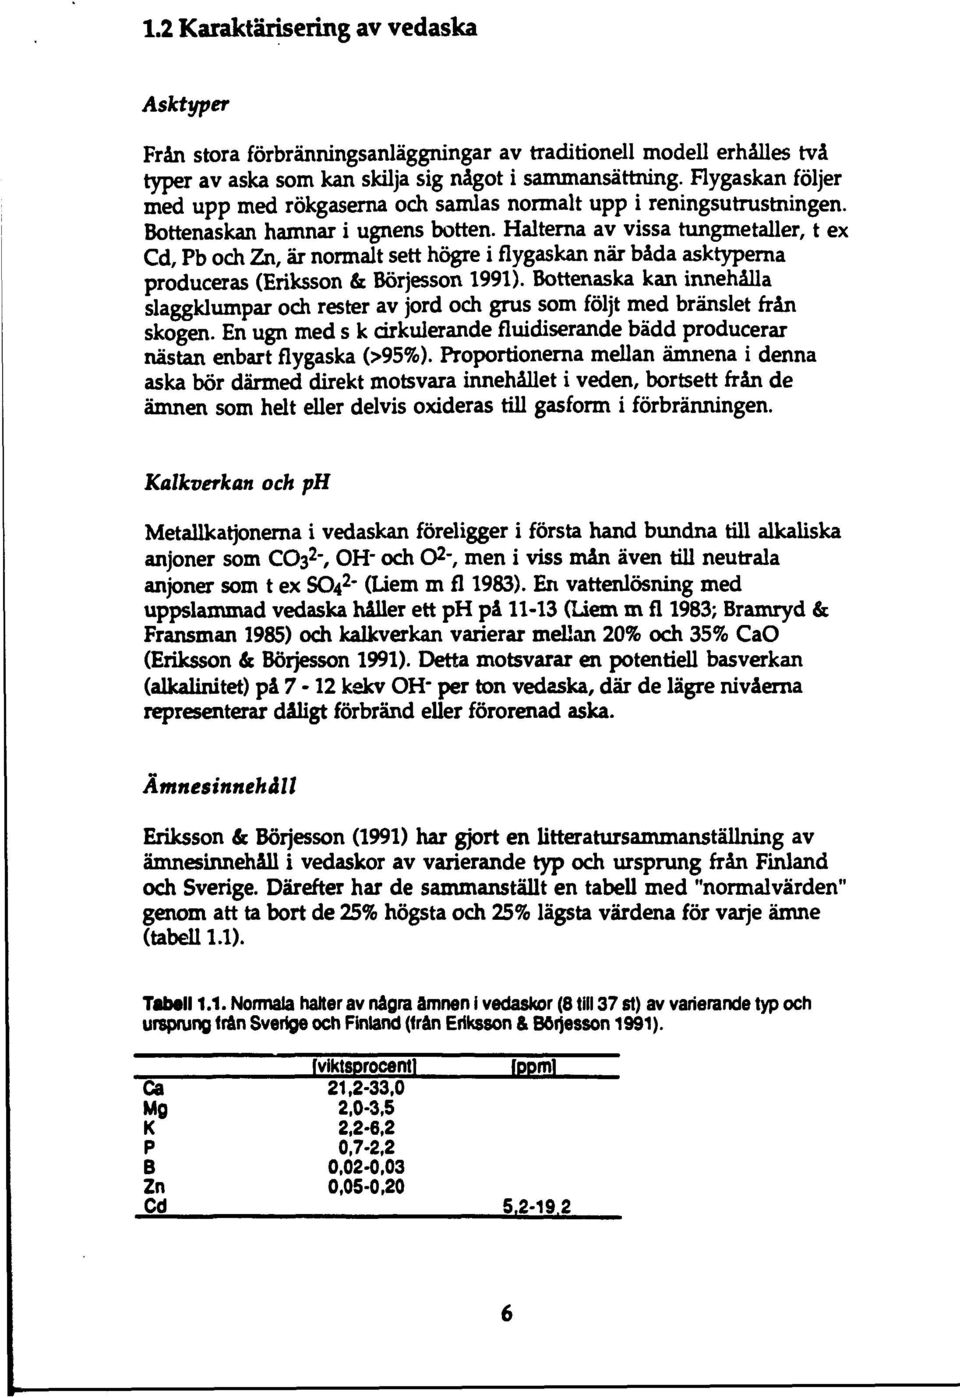 Halterna av vissa tungmetaller, t ex Cd, Pb och Zn, är normalt sett högre i flygaskan när båda asktyperna produceras (Eriksson & Börjesson 1991).